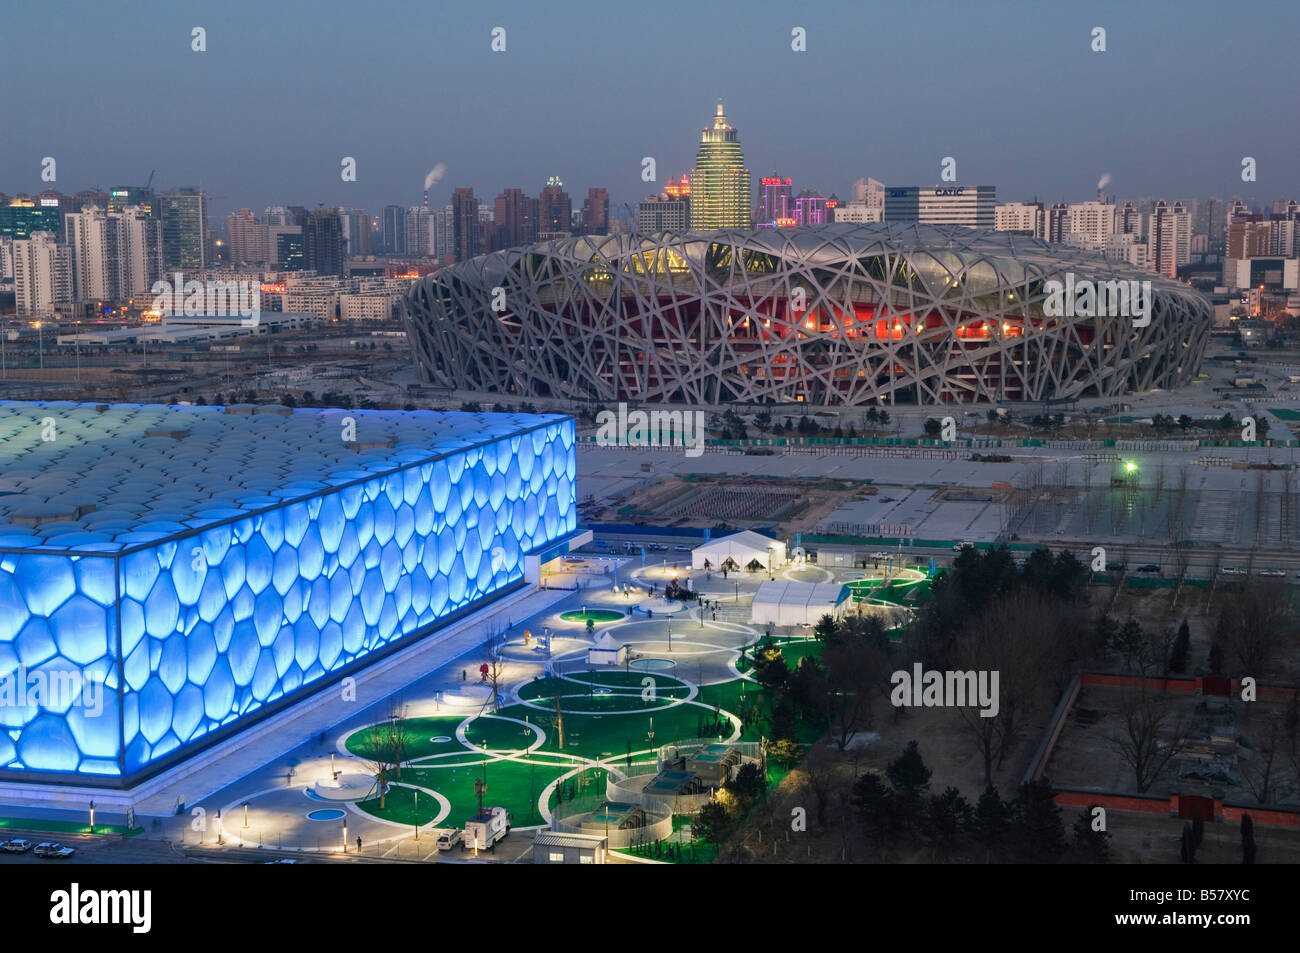 Le cube d'eau Le Centre national de natation natation arena et Stade National du Parc olympique, Beijing, China, Asia Banque D'Images